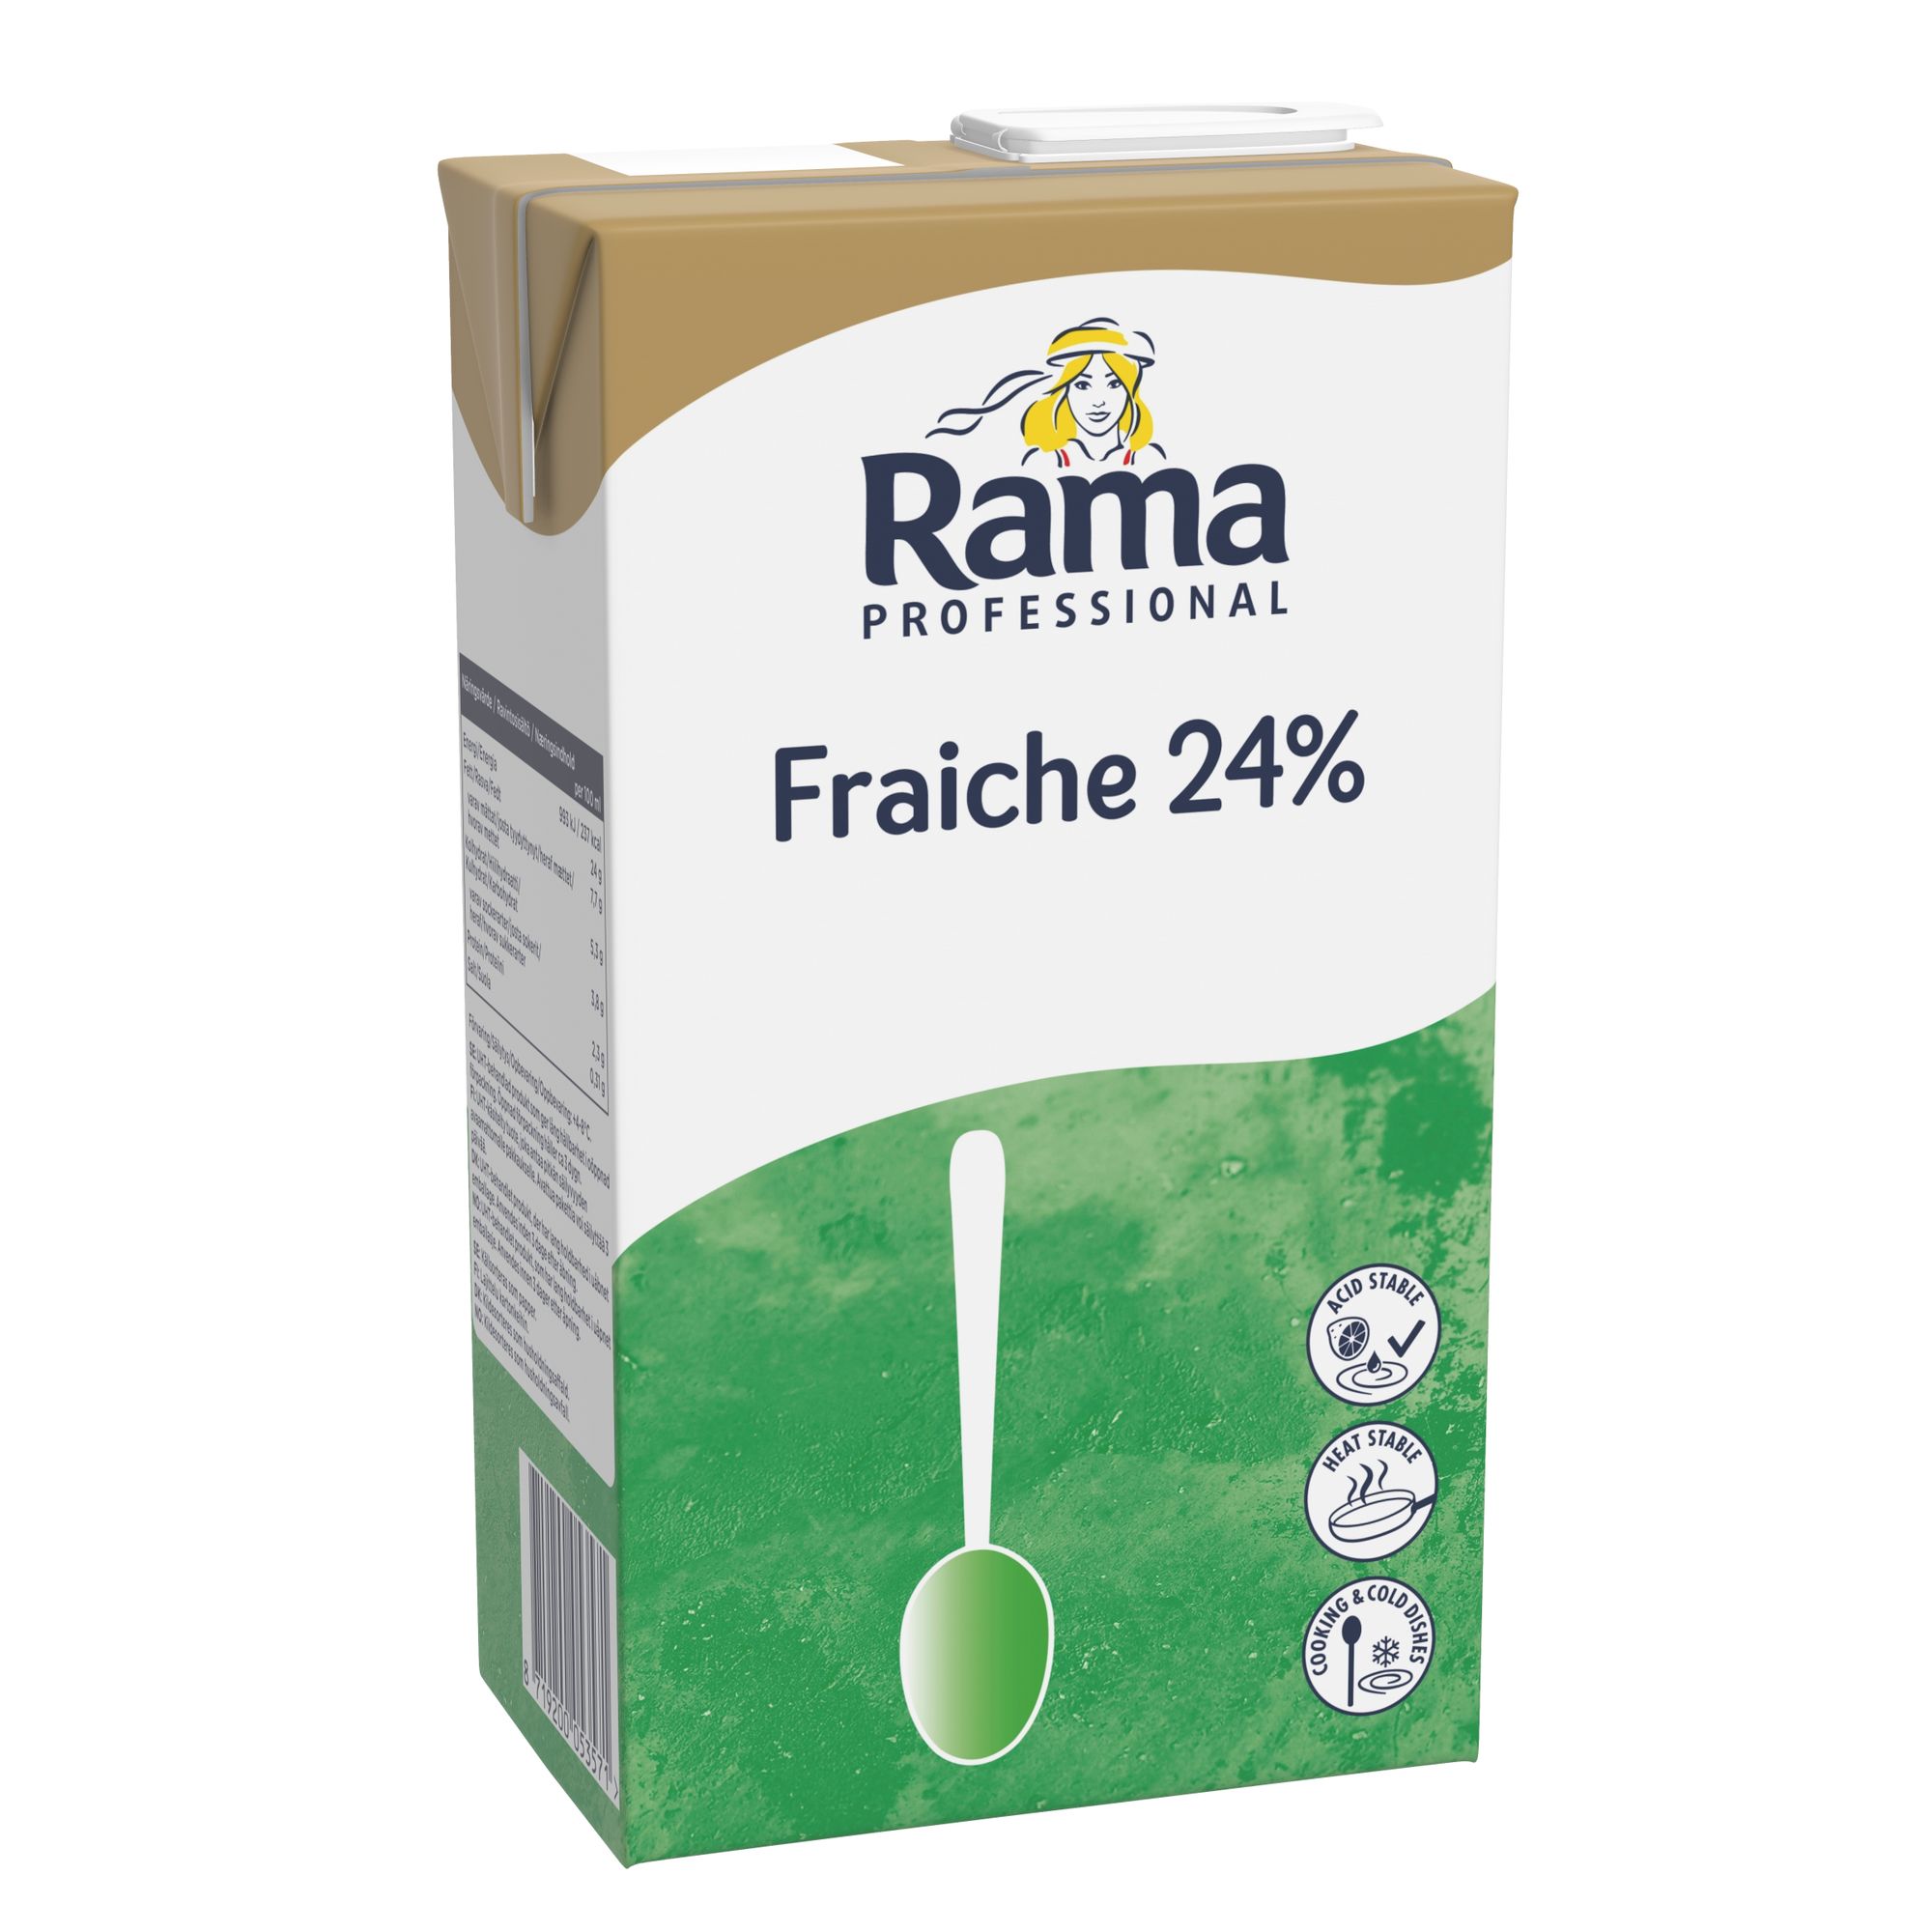 8 x 1 L . Alternativ til creme fraiche. Rama Fraiche har en fyldig og cremet konsistens. Vegetabilsk fedtindhold og kun 24% fedt.